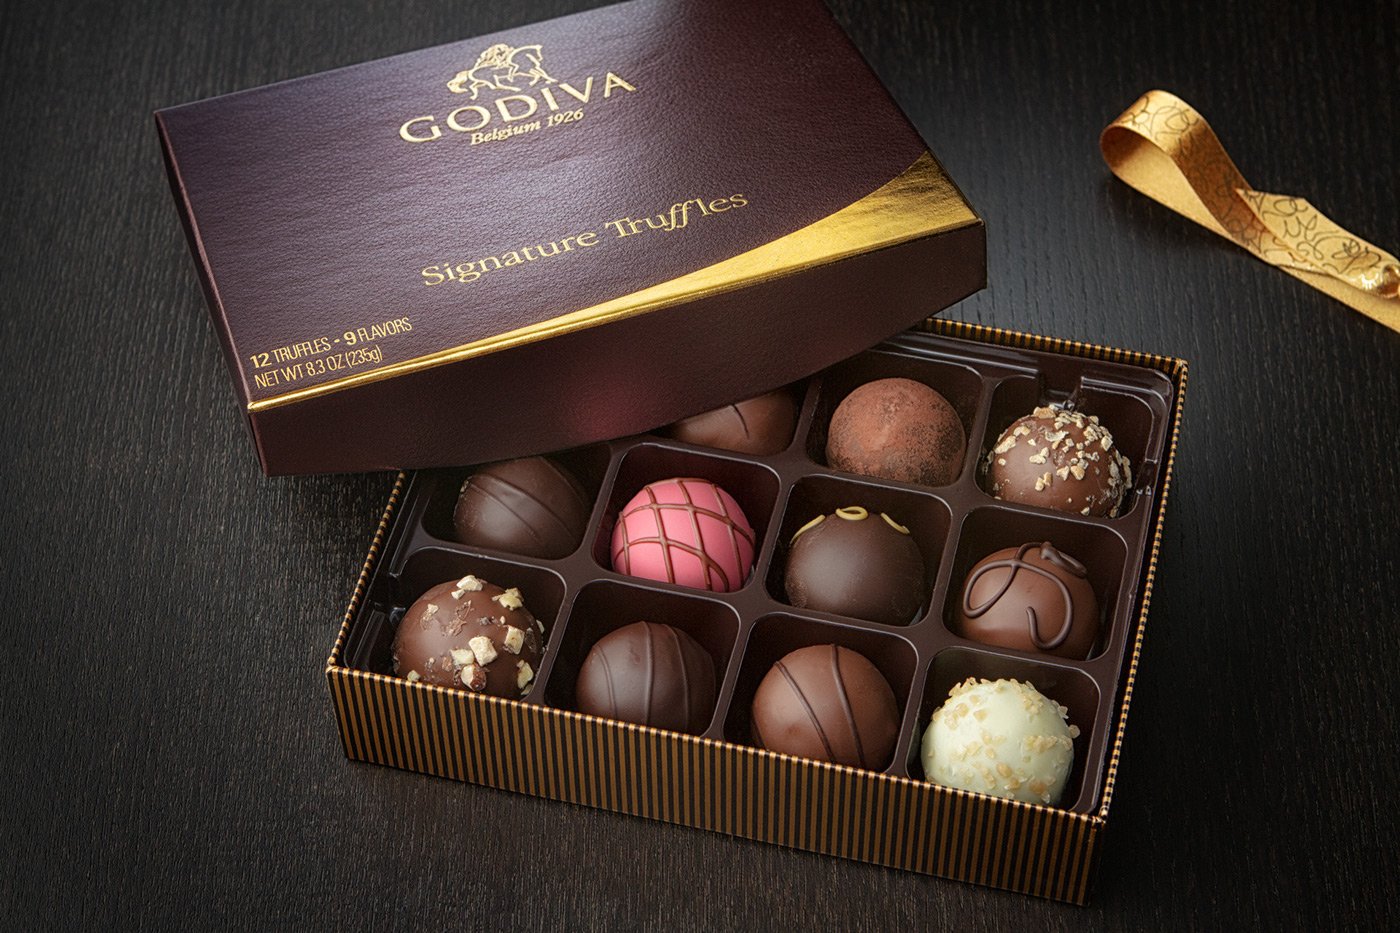 Выбрать конфеты шоколадные. Бельгийские конфеты Годива. Бельгийский шоколад Godiva. Леди Годива конфеты. Бельгийский шоколатье Godiva.